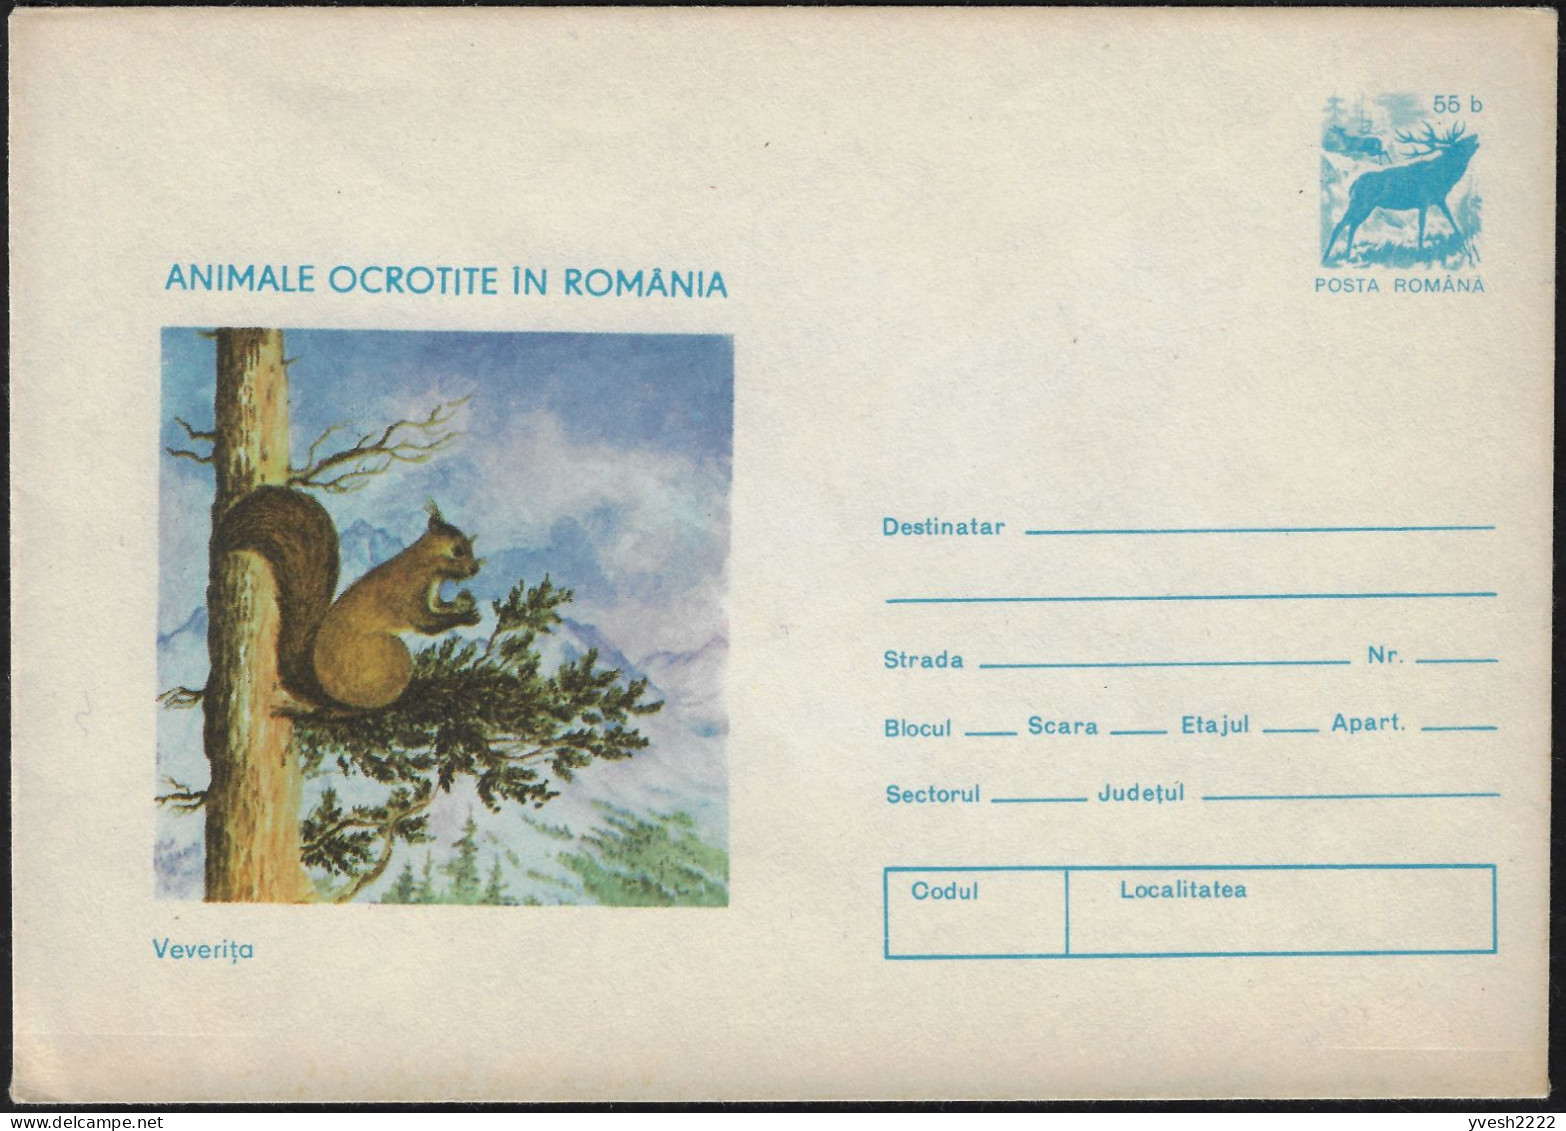 Roumanie 1977. Entier Postal, Animaux Protégés En Roumanie. Écureuil, Cerf - Roditori